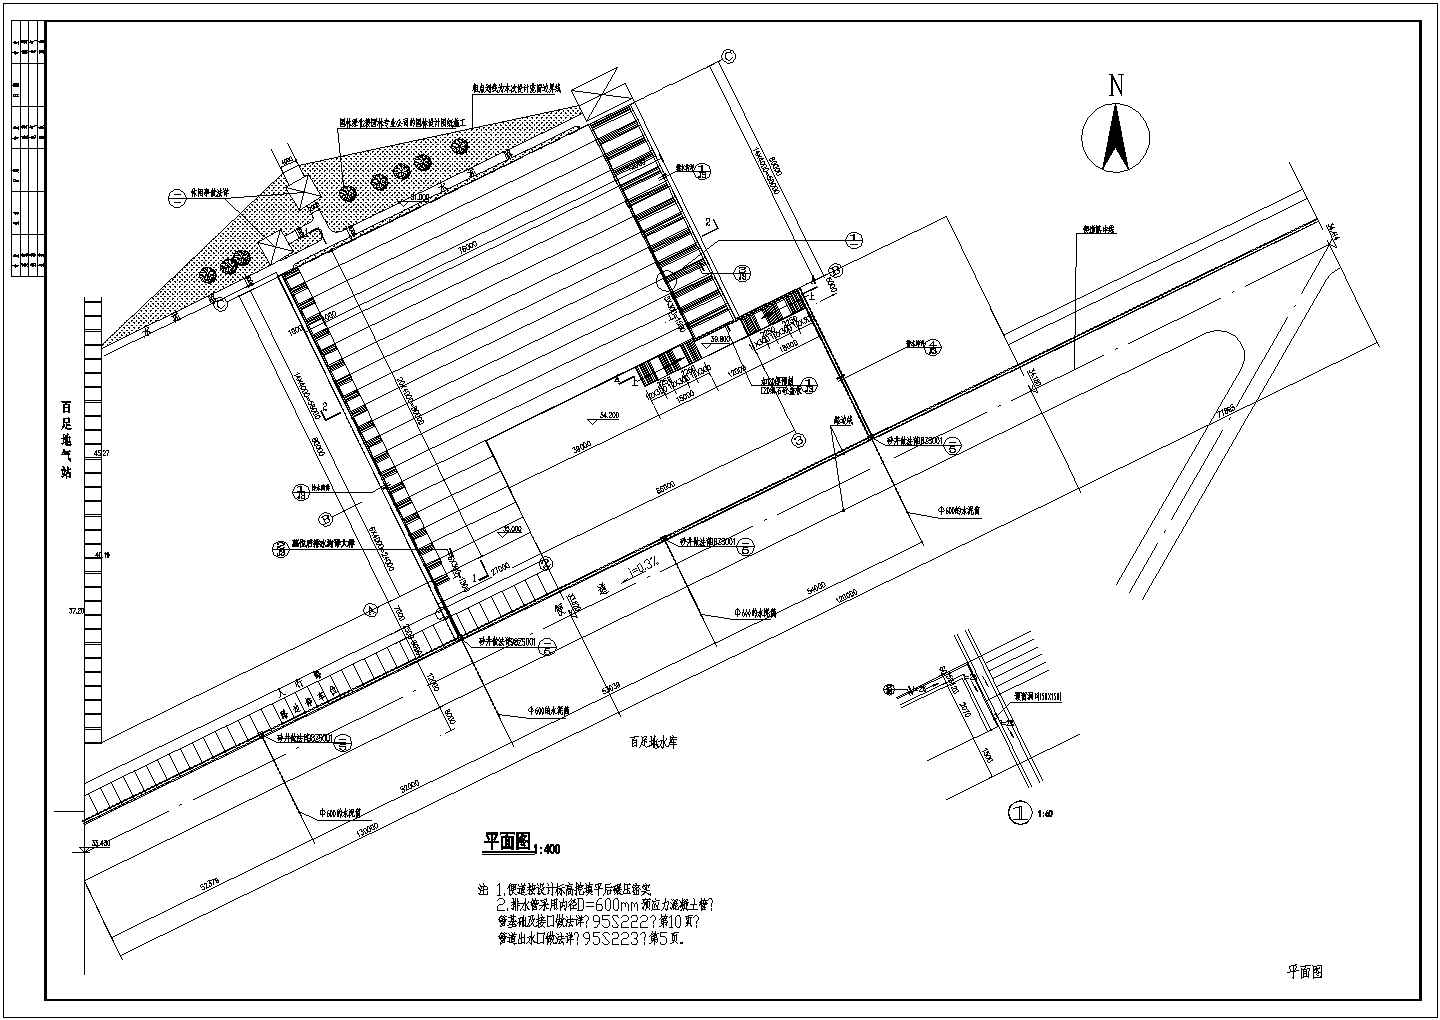 某地公墓陵园第九墓区建筑设计施工图